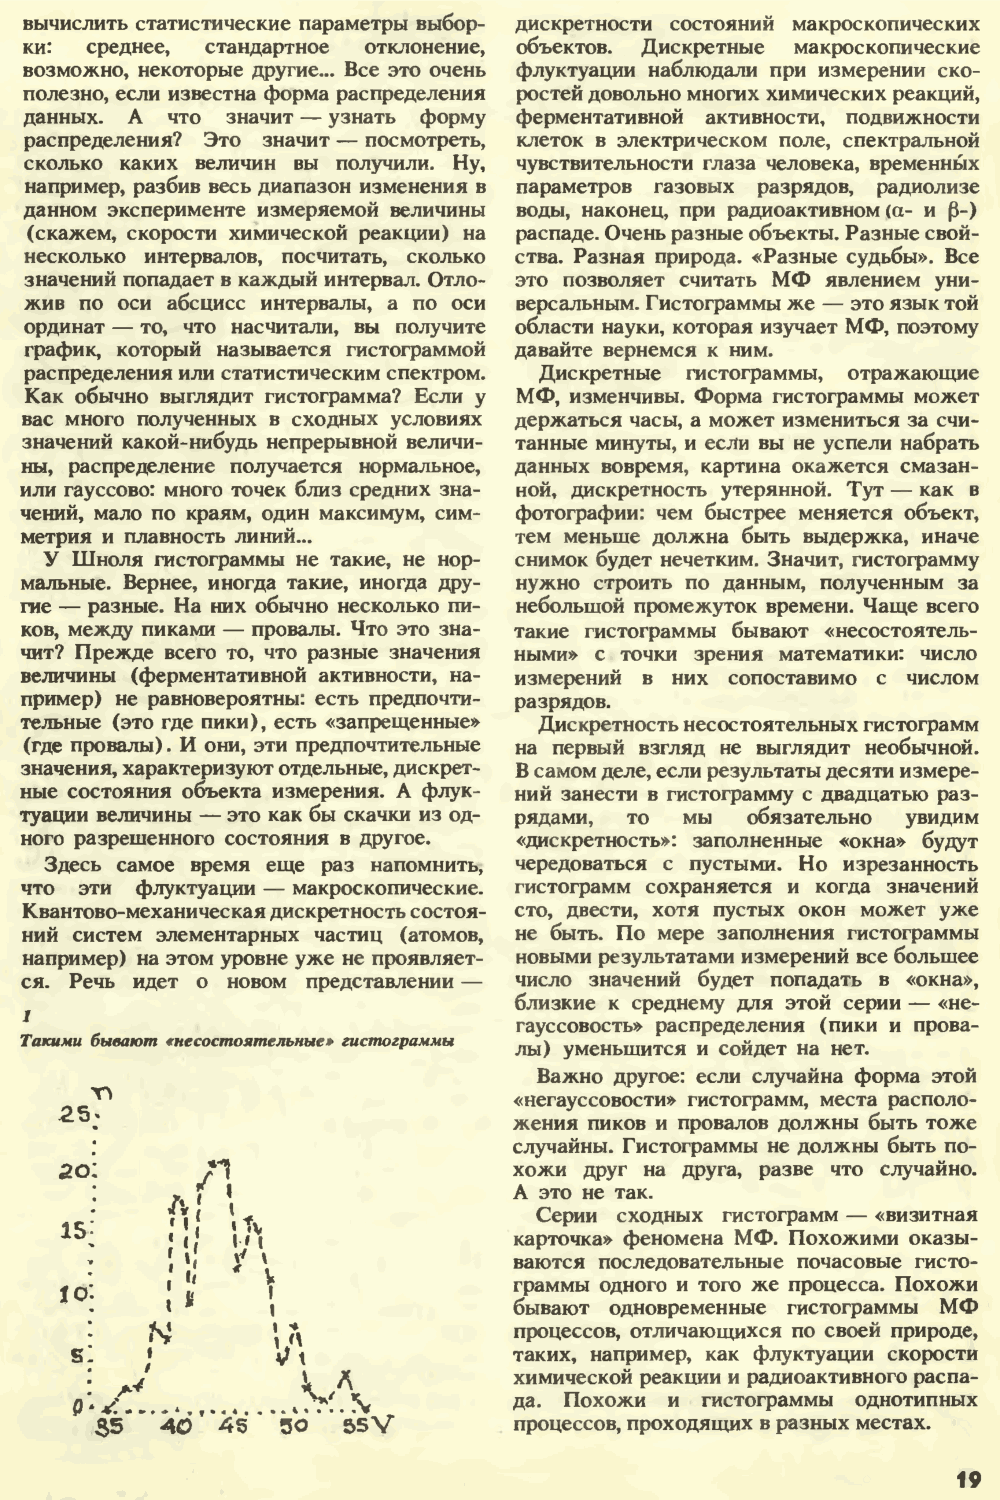 Внешняя сила. С.Н. Катасонов. Химия и жизнь, 1990, №7, с.16-22. Фотокопия №4